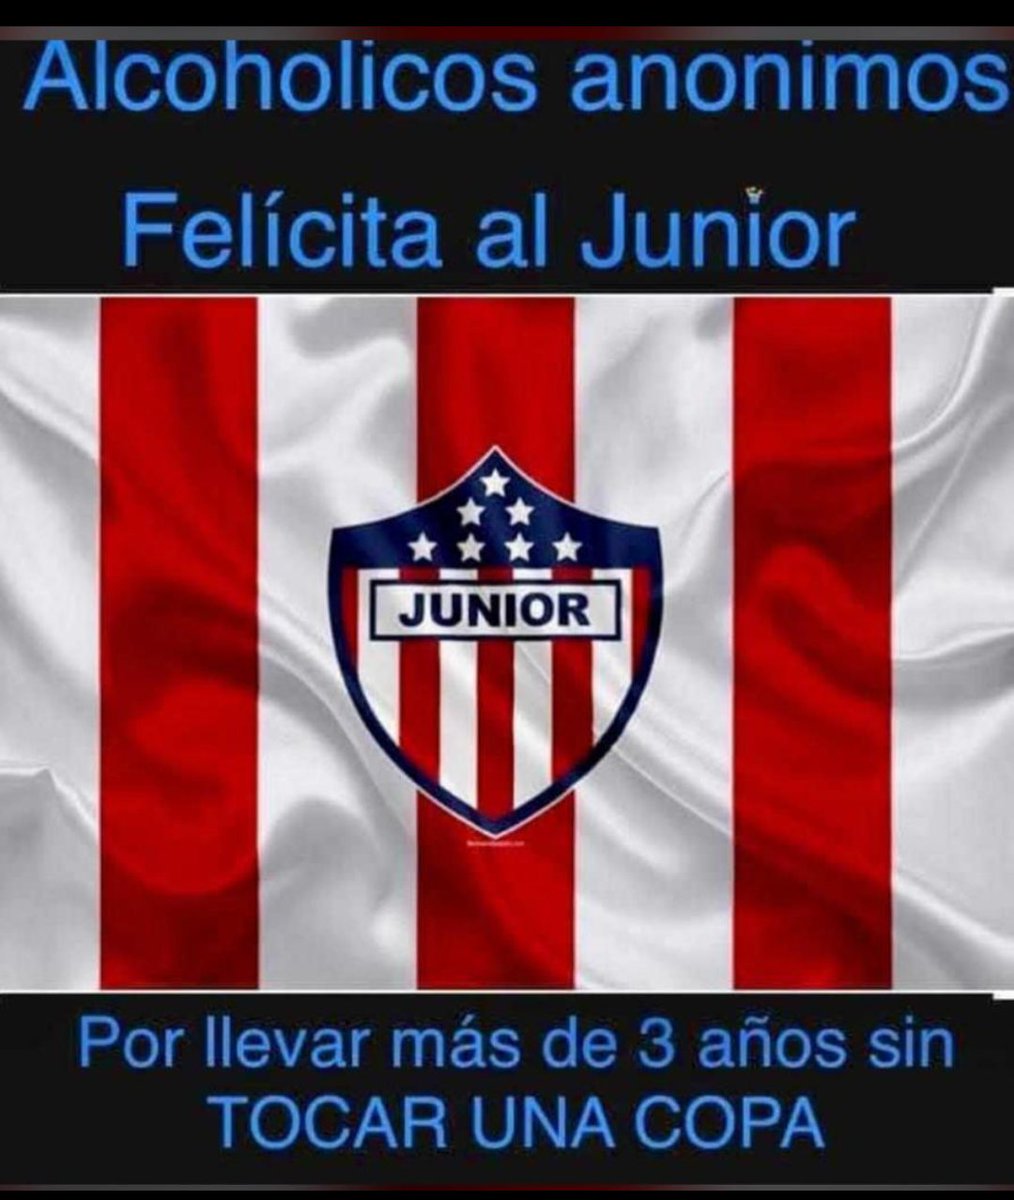 Felicitaciones @JuniorClubSA @AtleticoJunior_ @FRBS_Oficial @AAColombia_ @elheraldoco @LasNoticiasTel